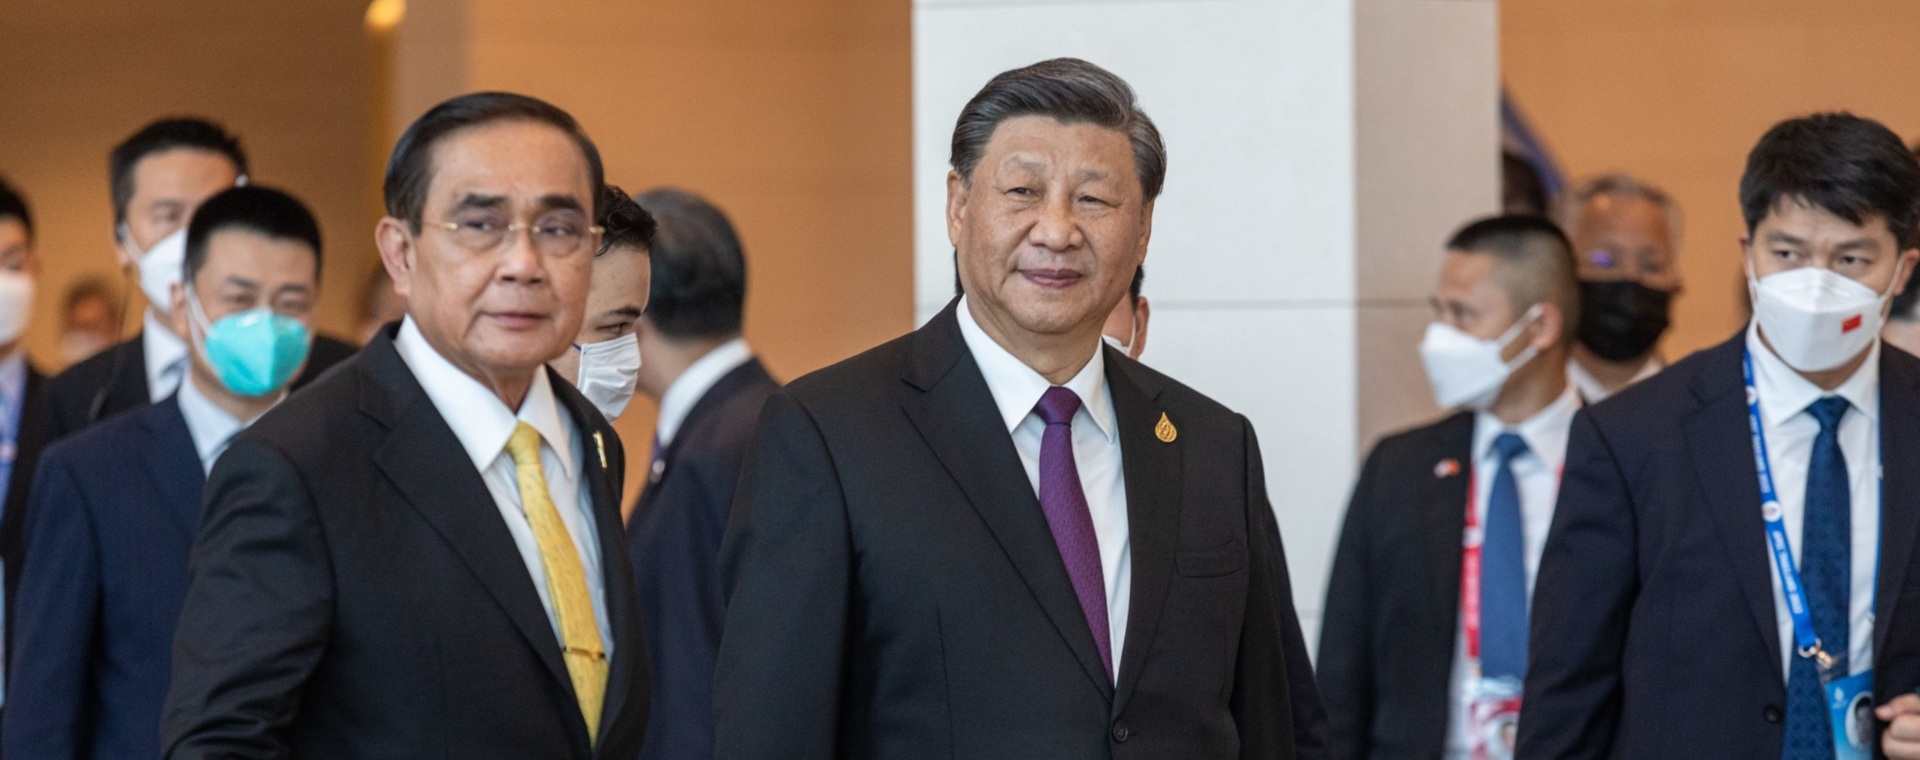 Prayuth Chan-Ocha, Perdana Menteri Thailand, kiri, dan Xi Jinping, Presiden China, tiba di KTT Kerja Sama Ekonomi Asia-Pasifik (APEC) di Bangkok, Thailand, pada Jumat (18/11/2022). Bloomberg - Andre Malerba